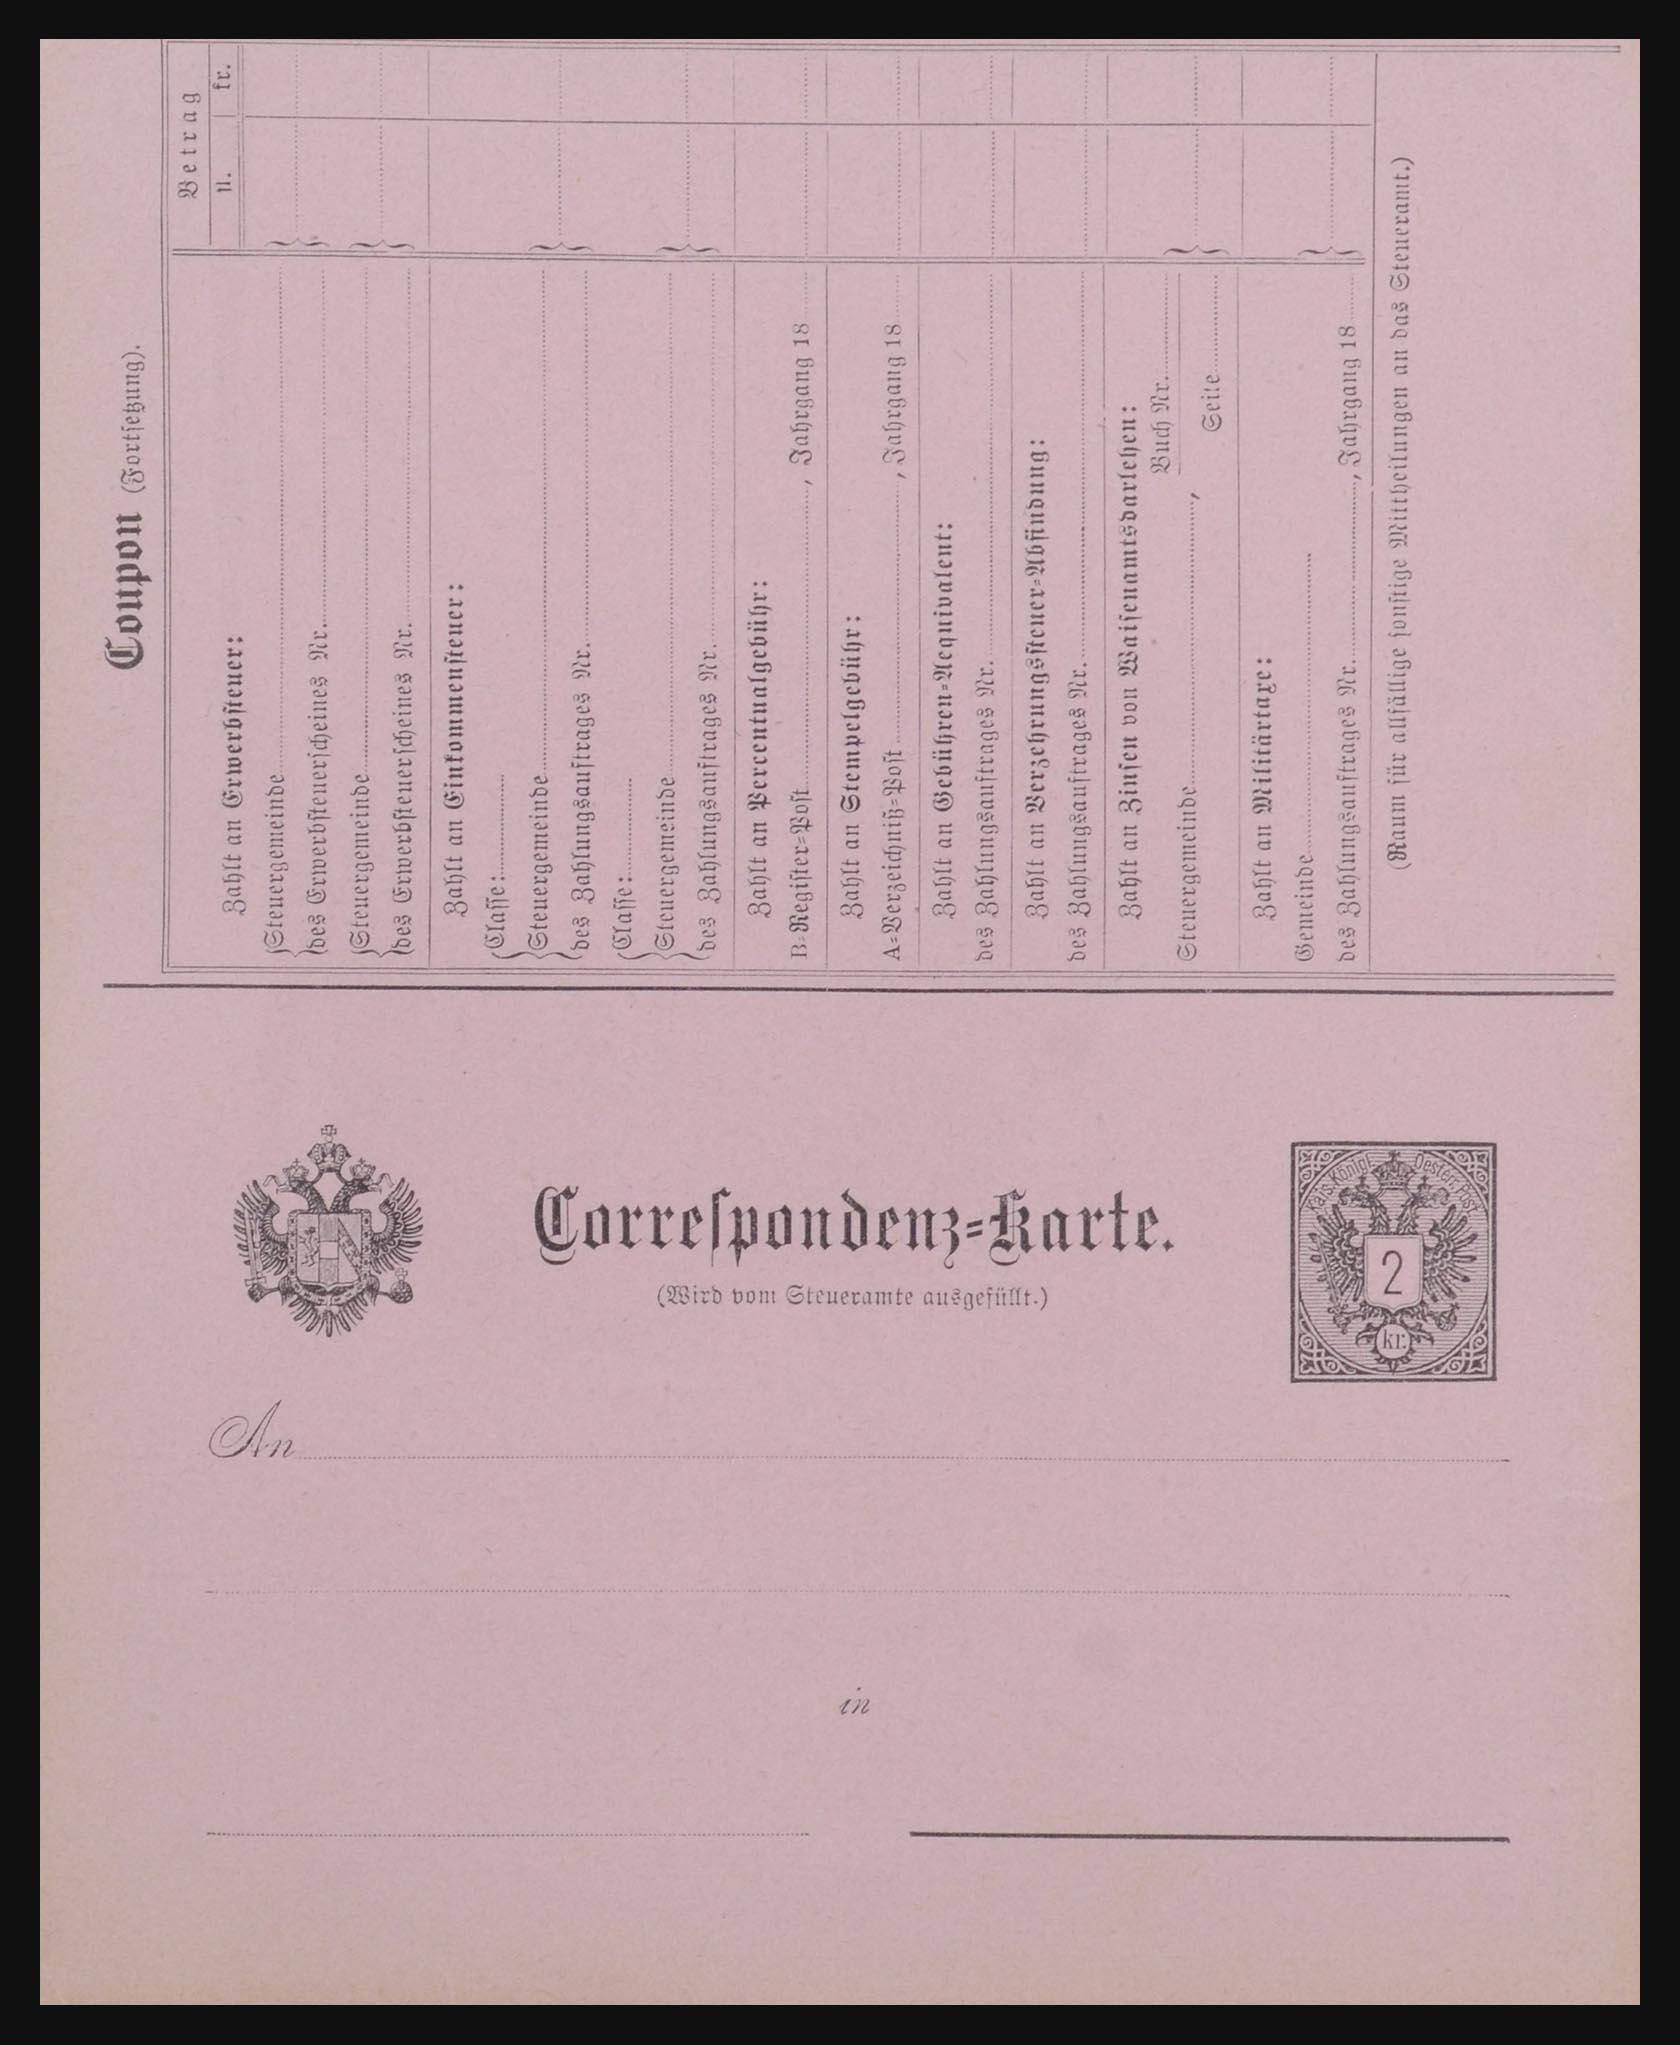 32254 0006 - 32254 Oostenrijk brieven vanaf 1800.